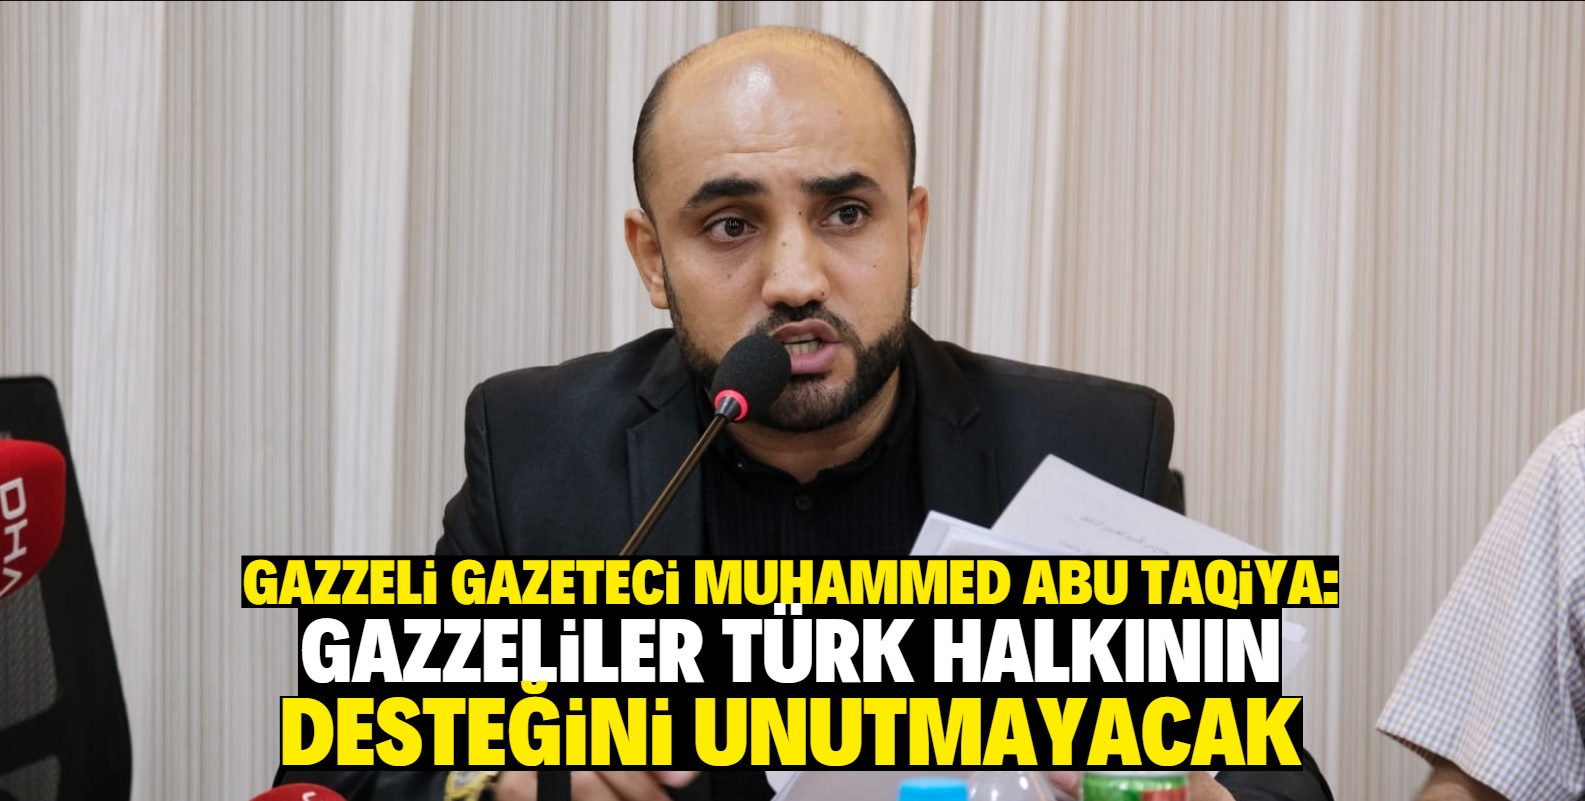 Gazzeli gazeteci Muhammed Abu Taqiya: Gazzeliler Türk halkının desteğini unutmayacak